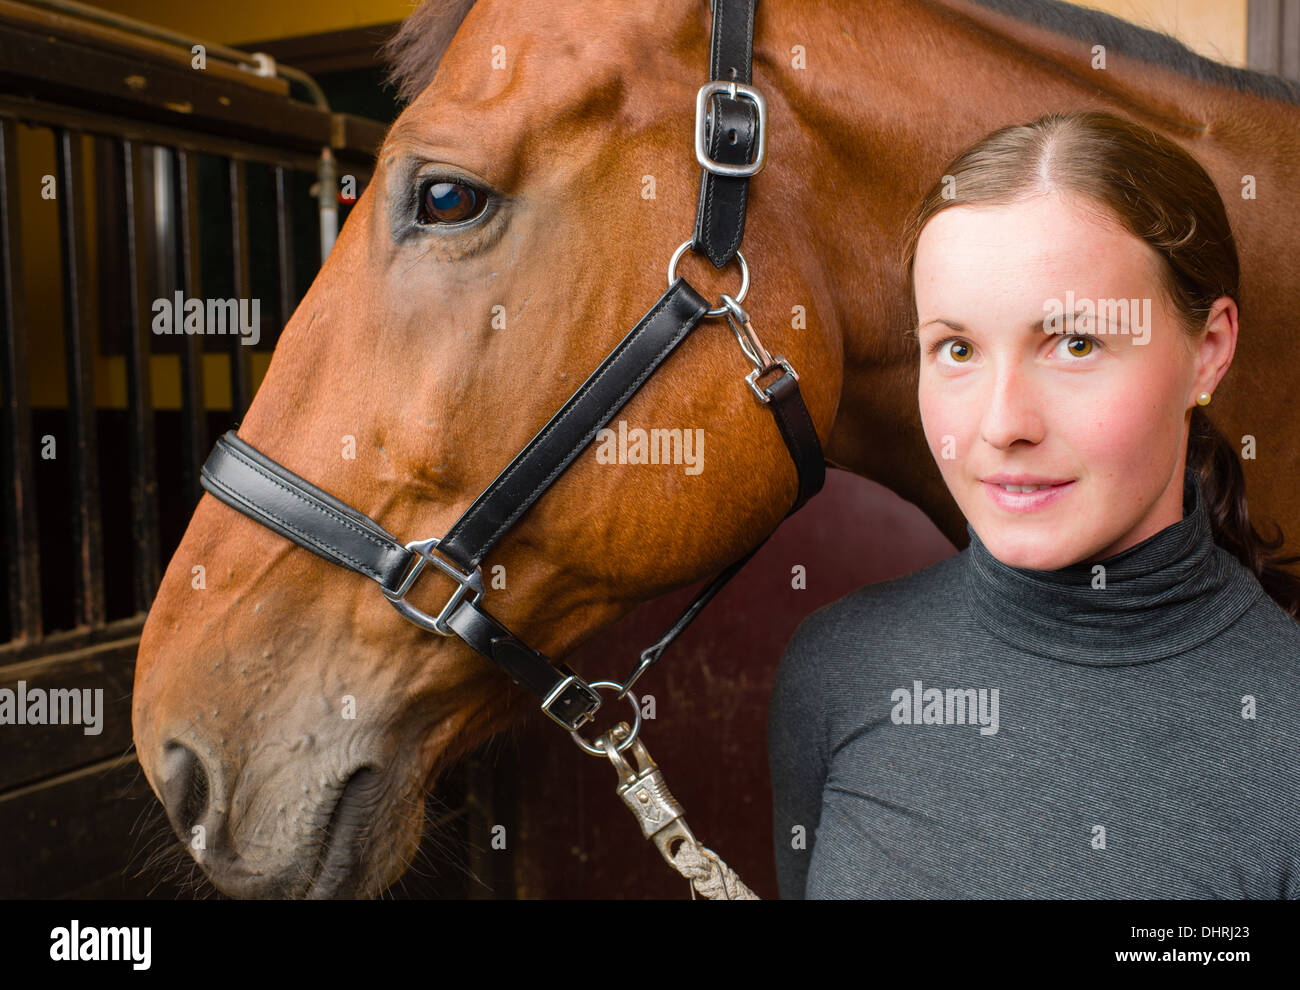 Femme et cheval, femme regarde vers l'appareil photo Banque D'Images